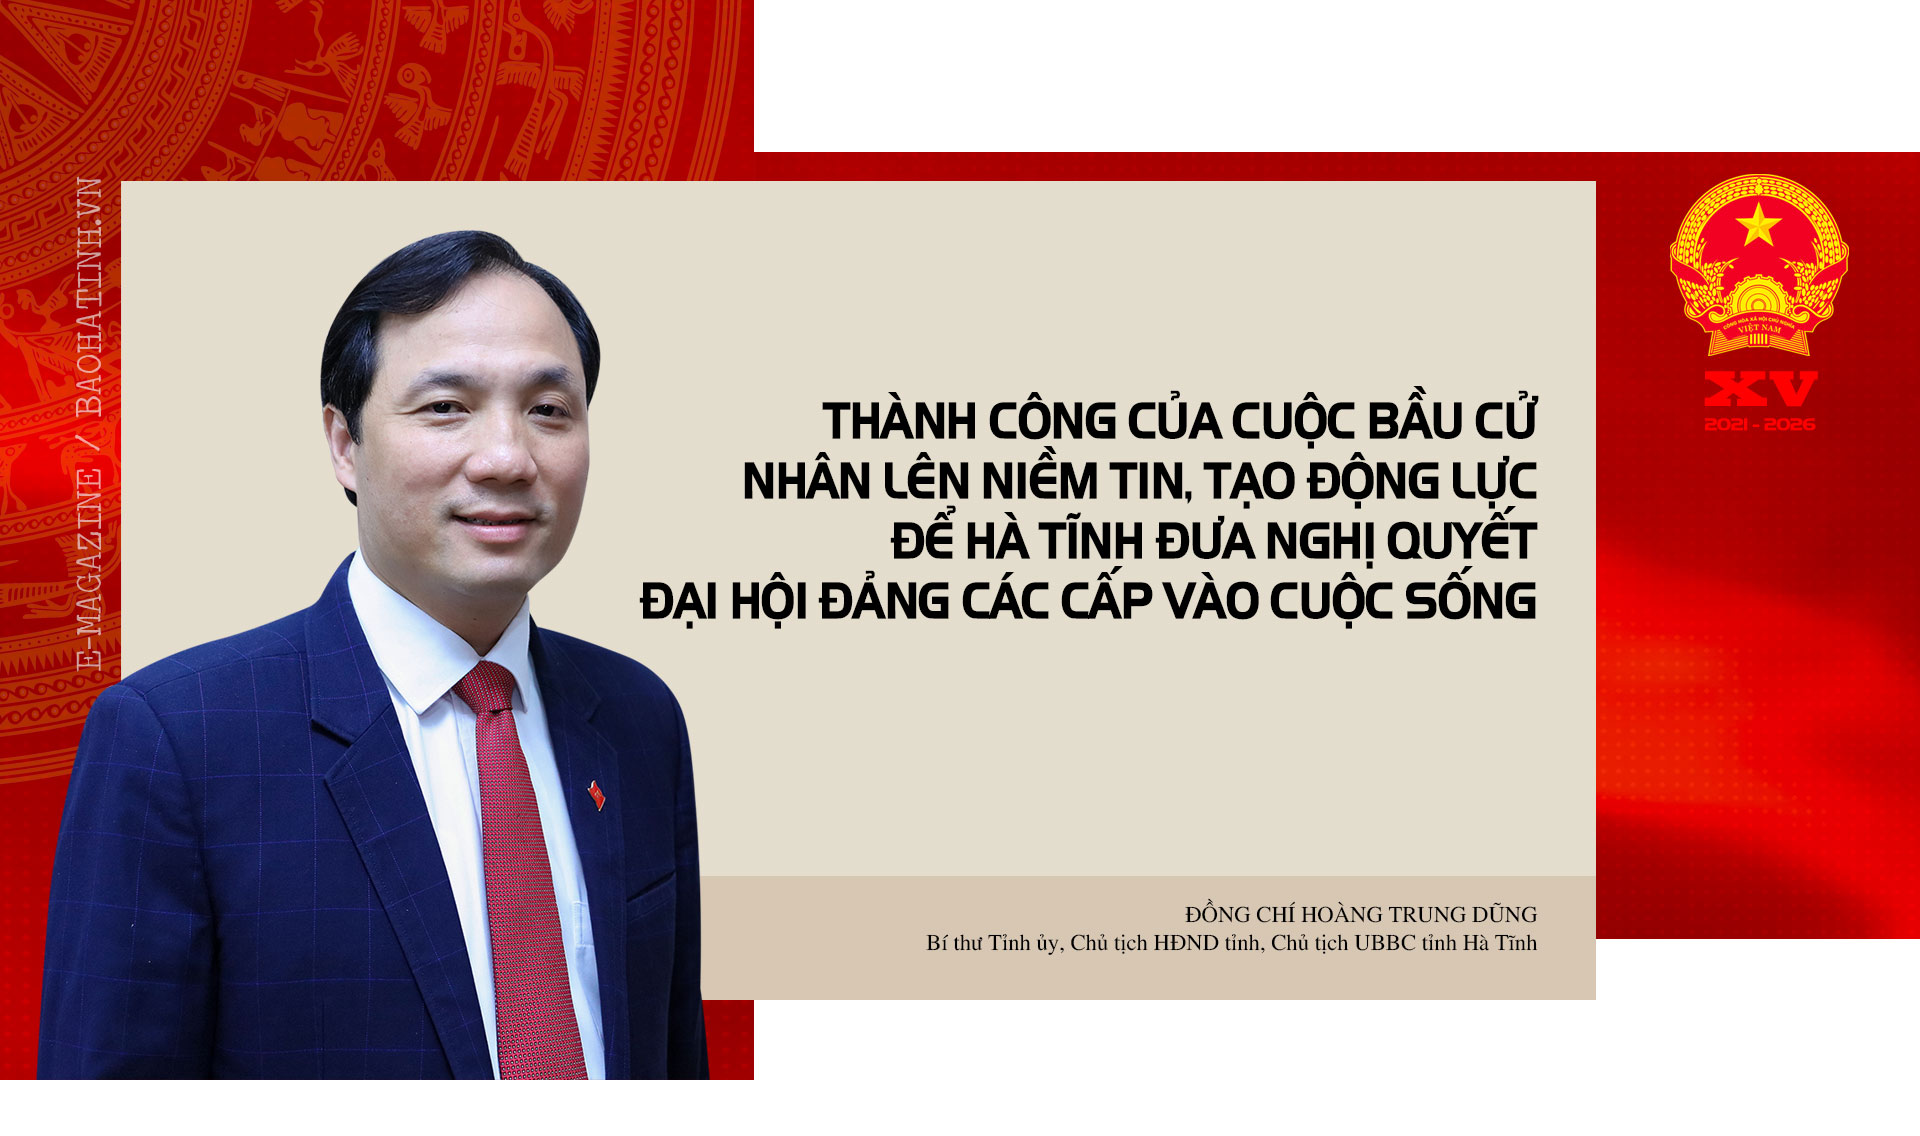 Thành công của cuộc bầu cử nhân lên niềm tin, tạo động lực để Hà Tĩnh đưa nghị quyết đại hội Đảng các cấp vào cuộc sống